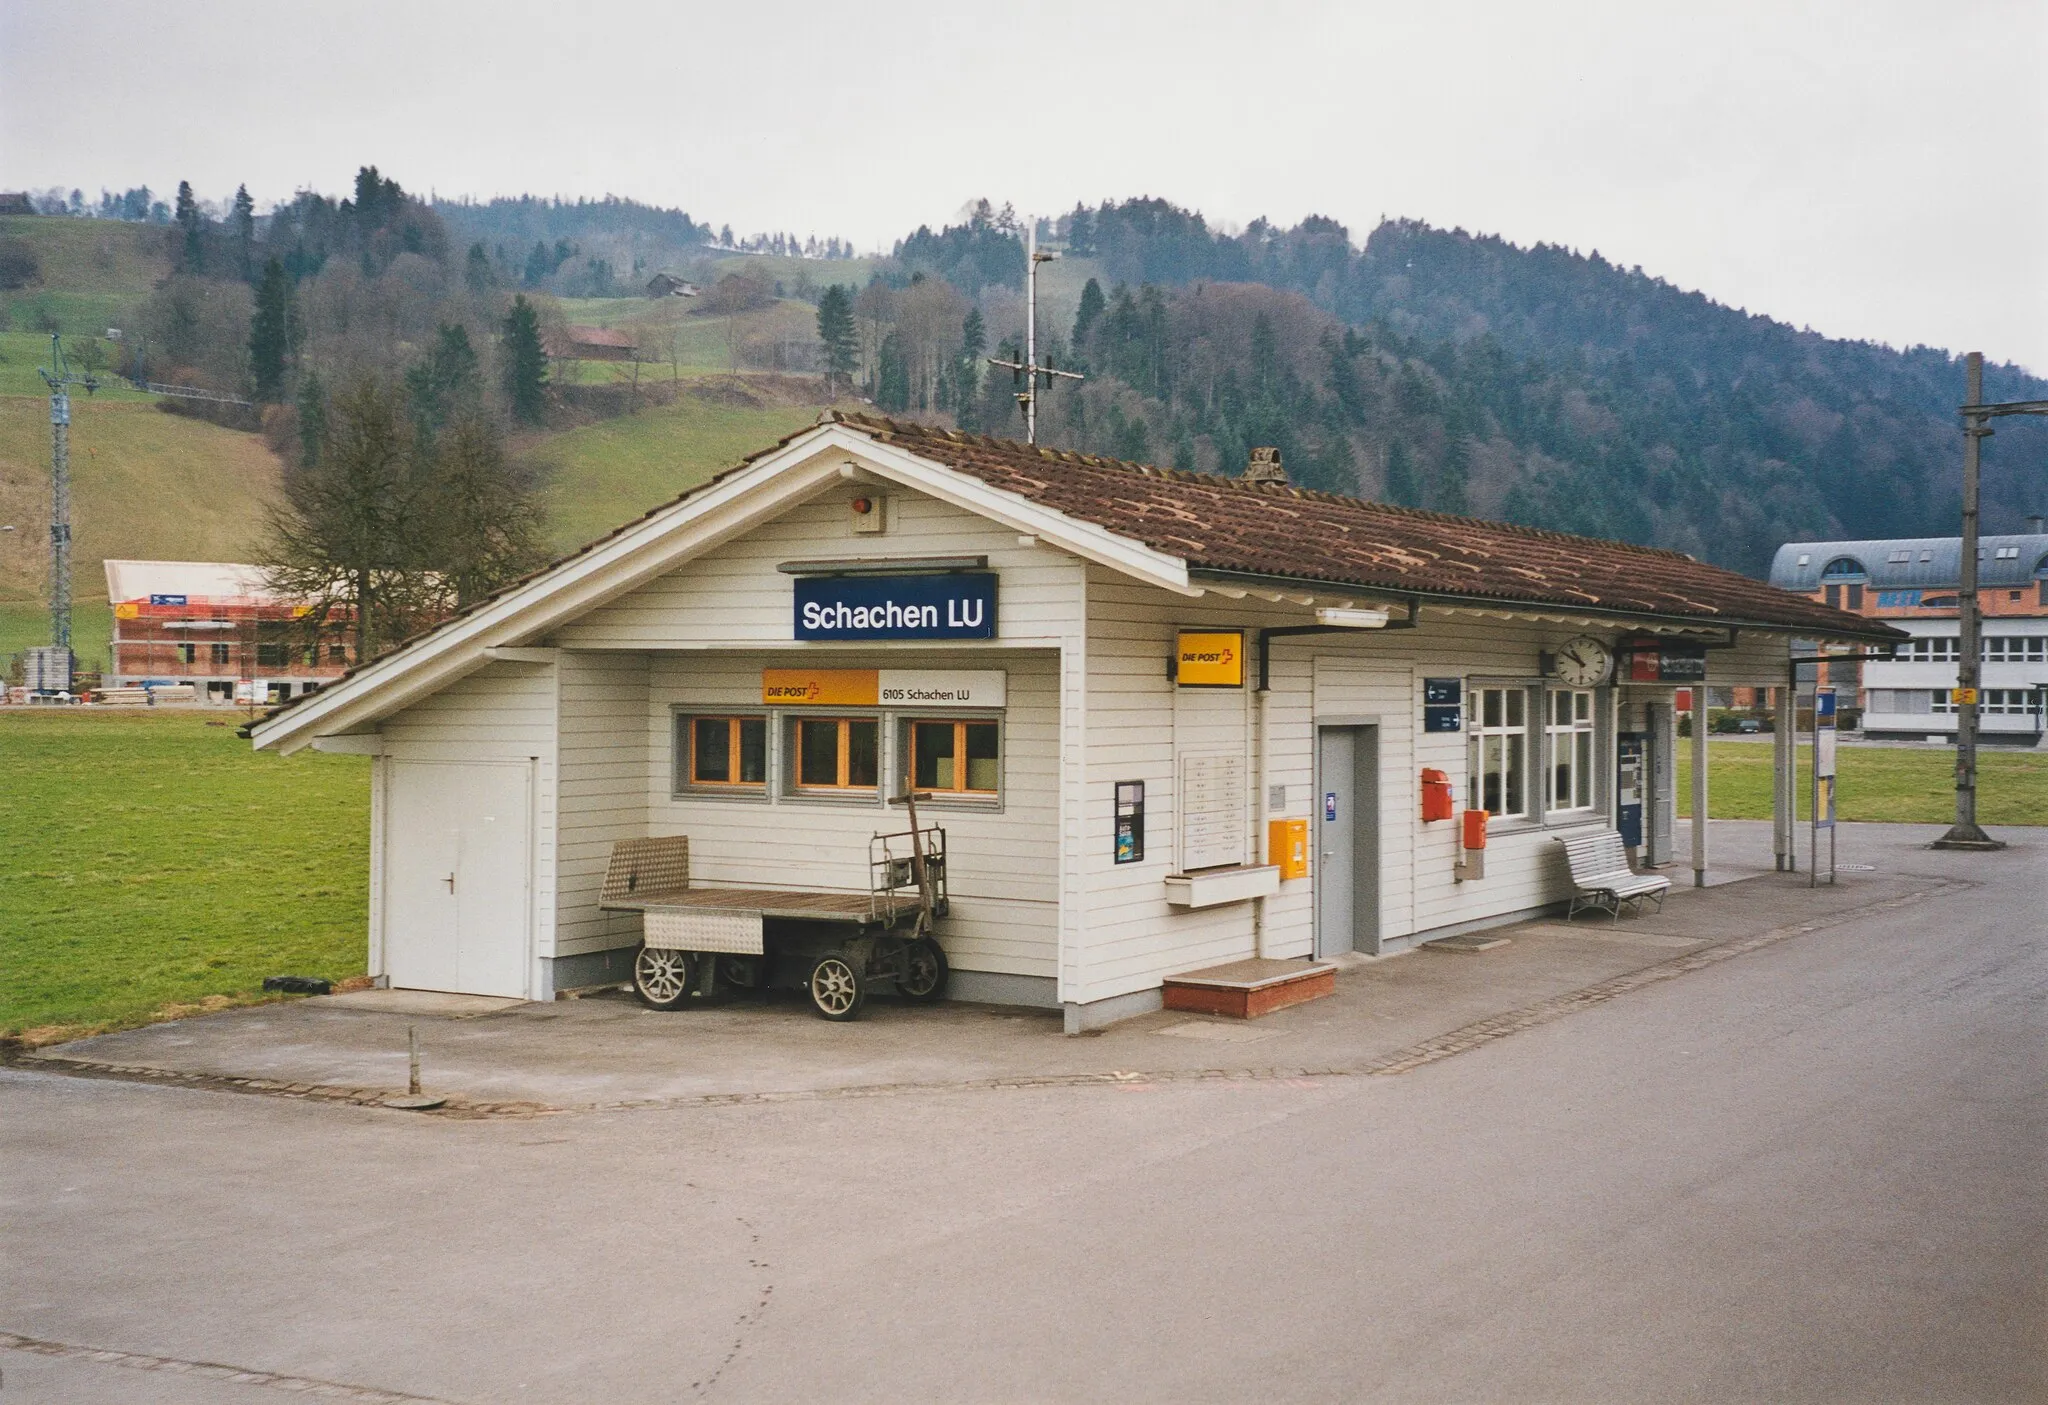 Imagen de Zentralschweiz